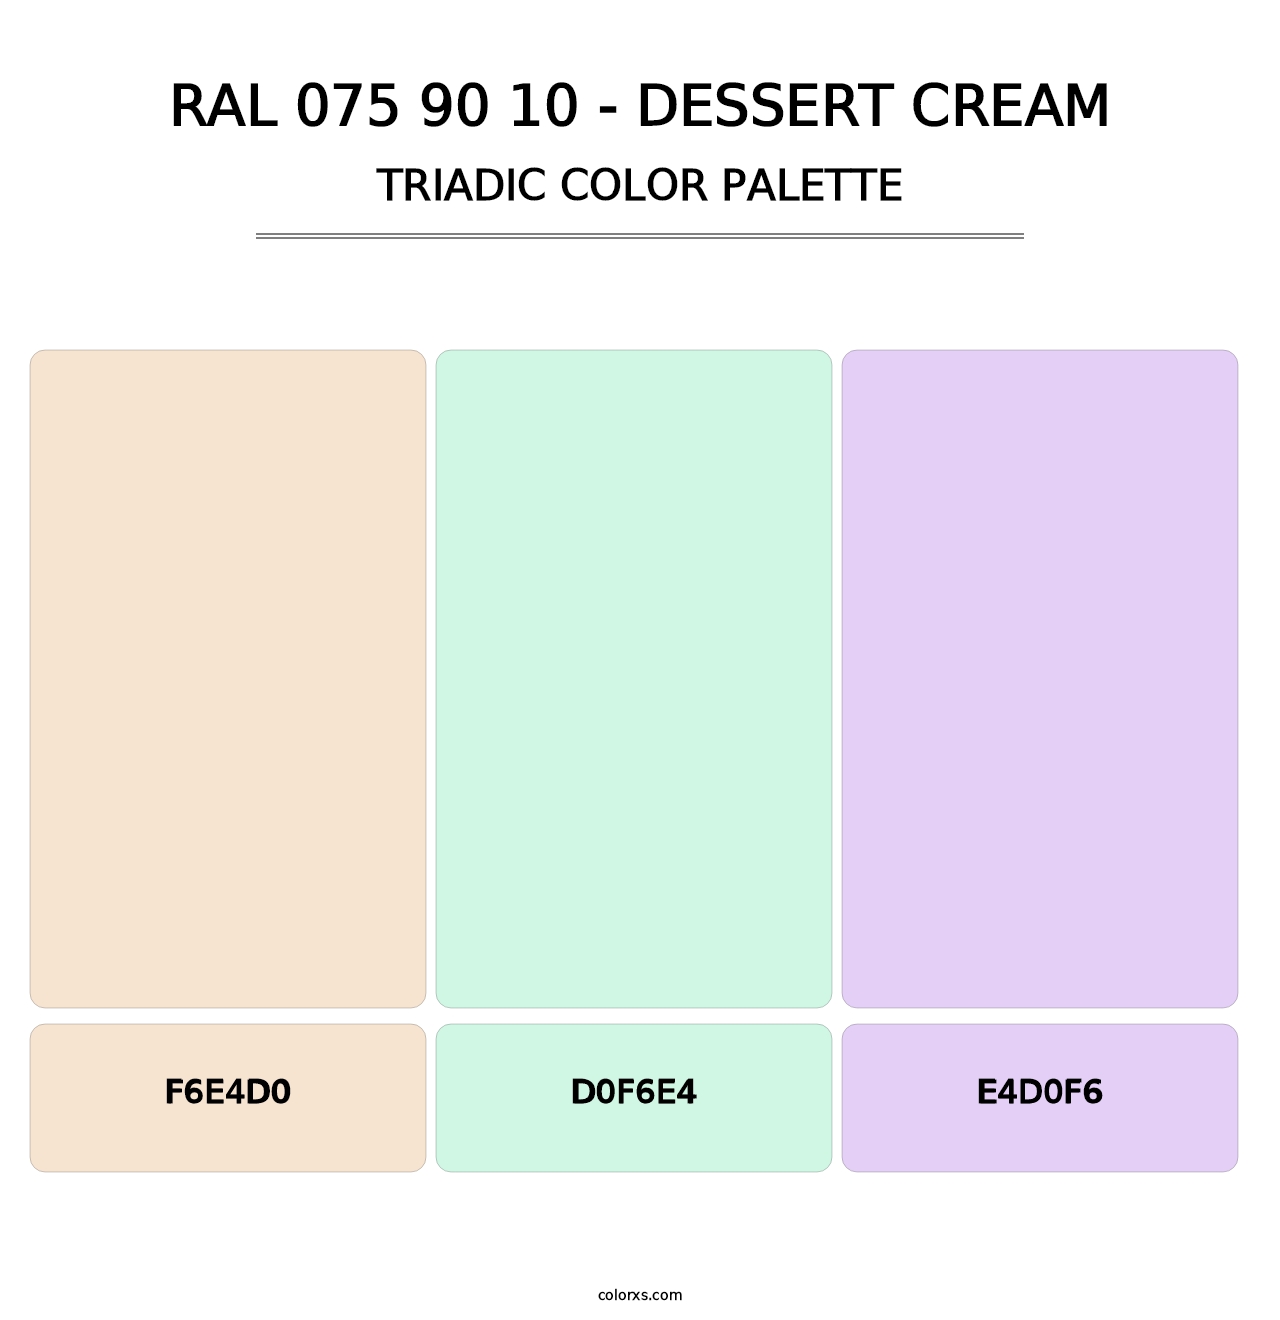 RAL 075 90 10 - Dessert Cream - Triadic Color Palette